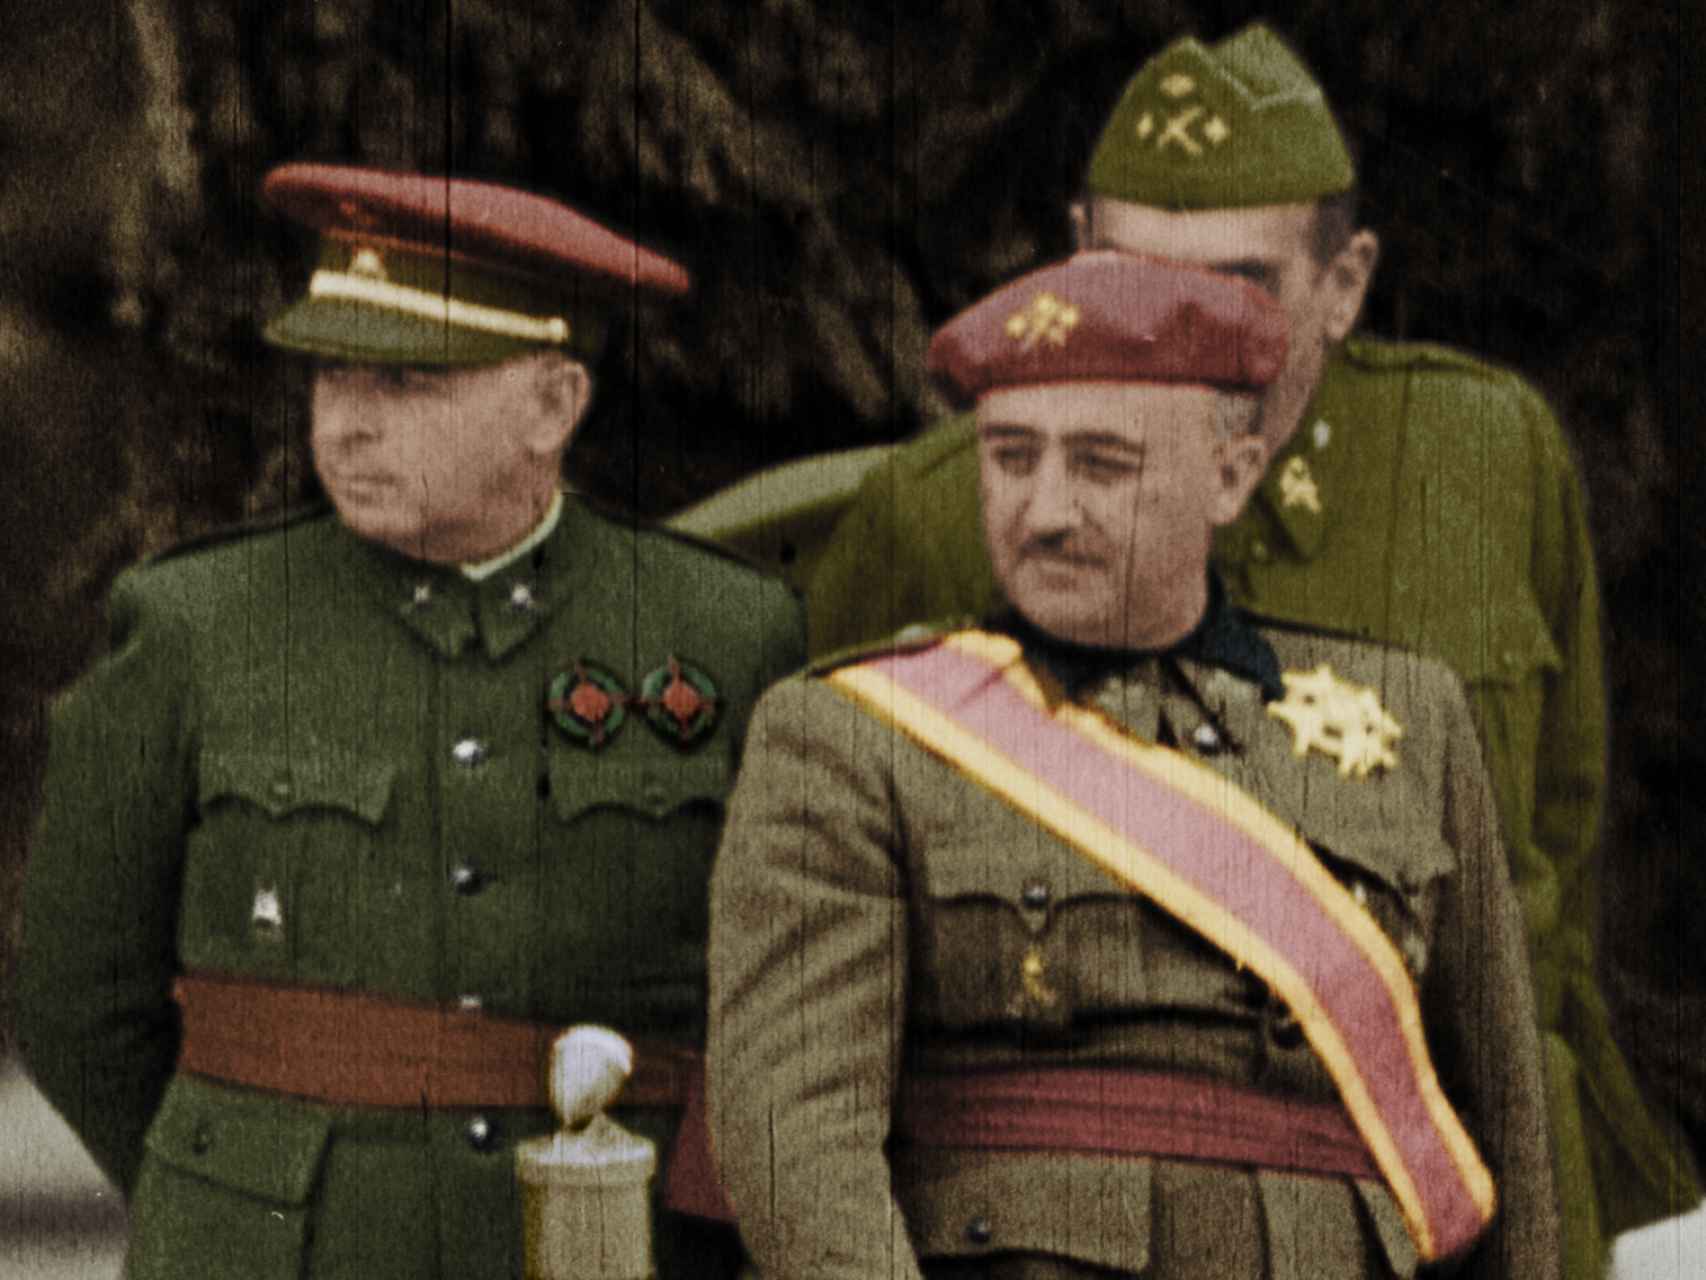 Franco, a todo color, en un fotograma del documental.